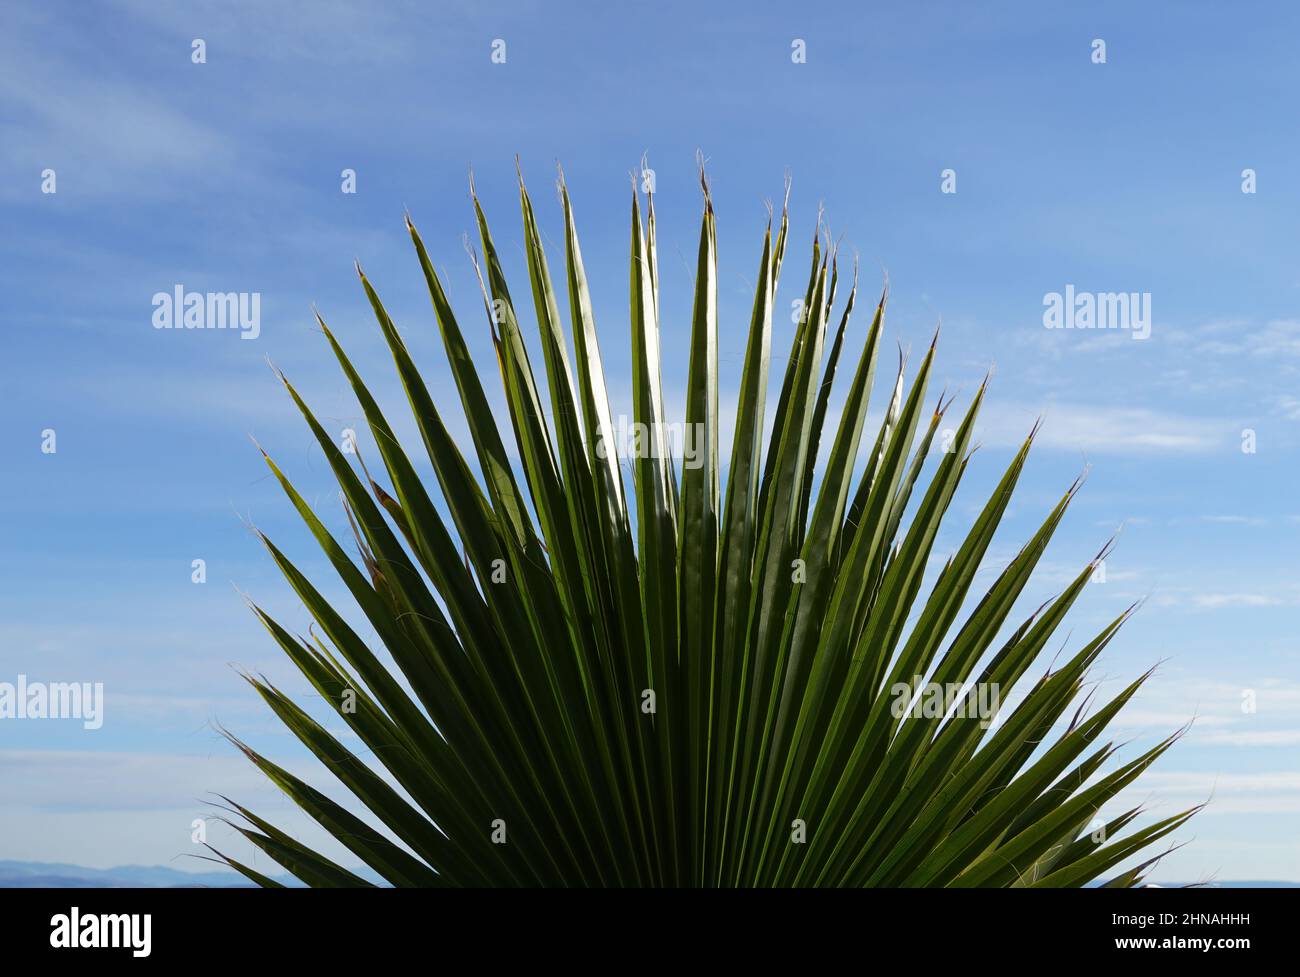 Un grande fan verde della California a forma di ventaglio di palme o Washingtonia filifera in latino Foto Stock